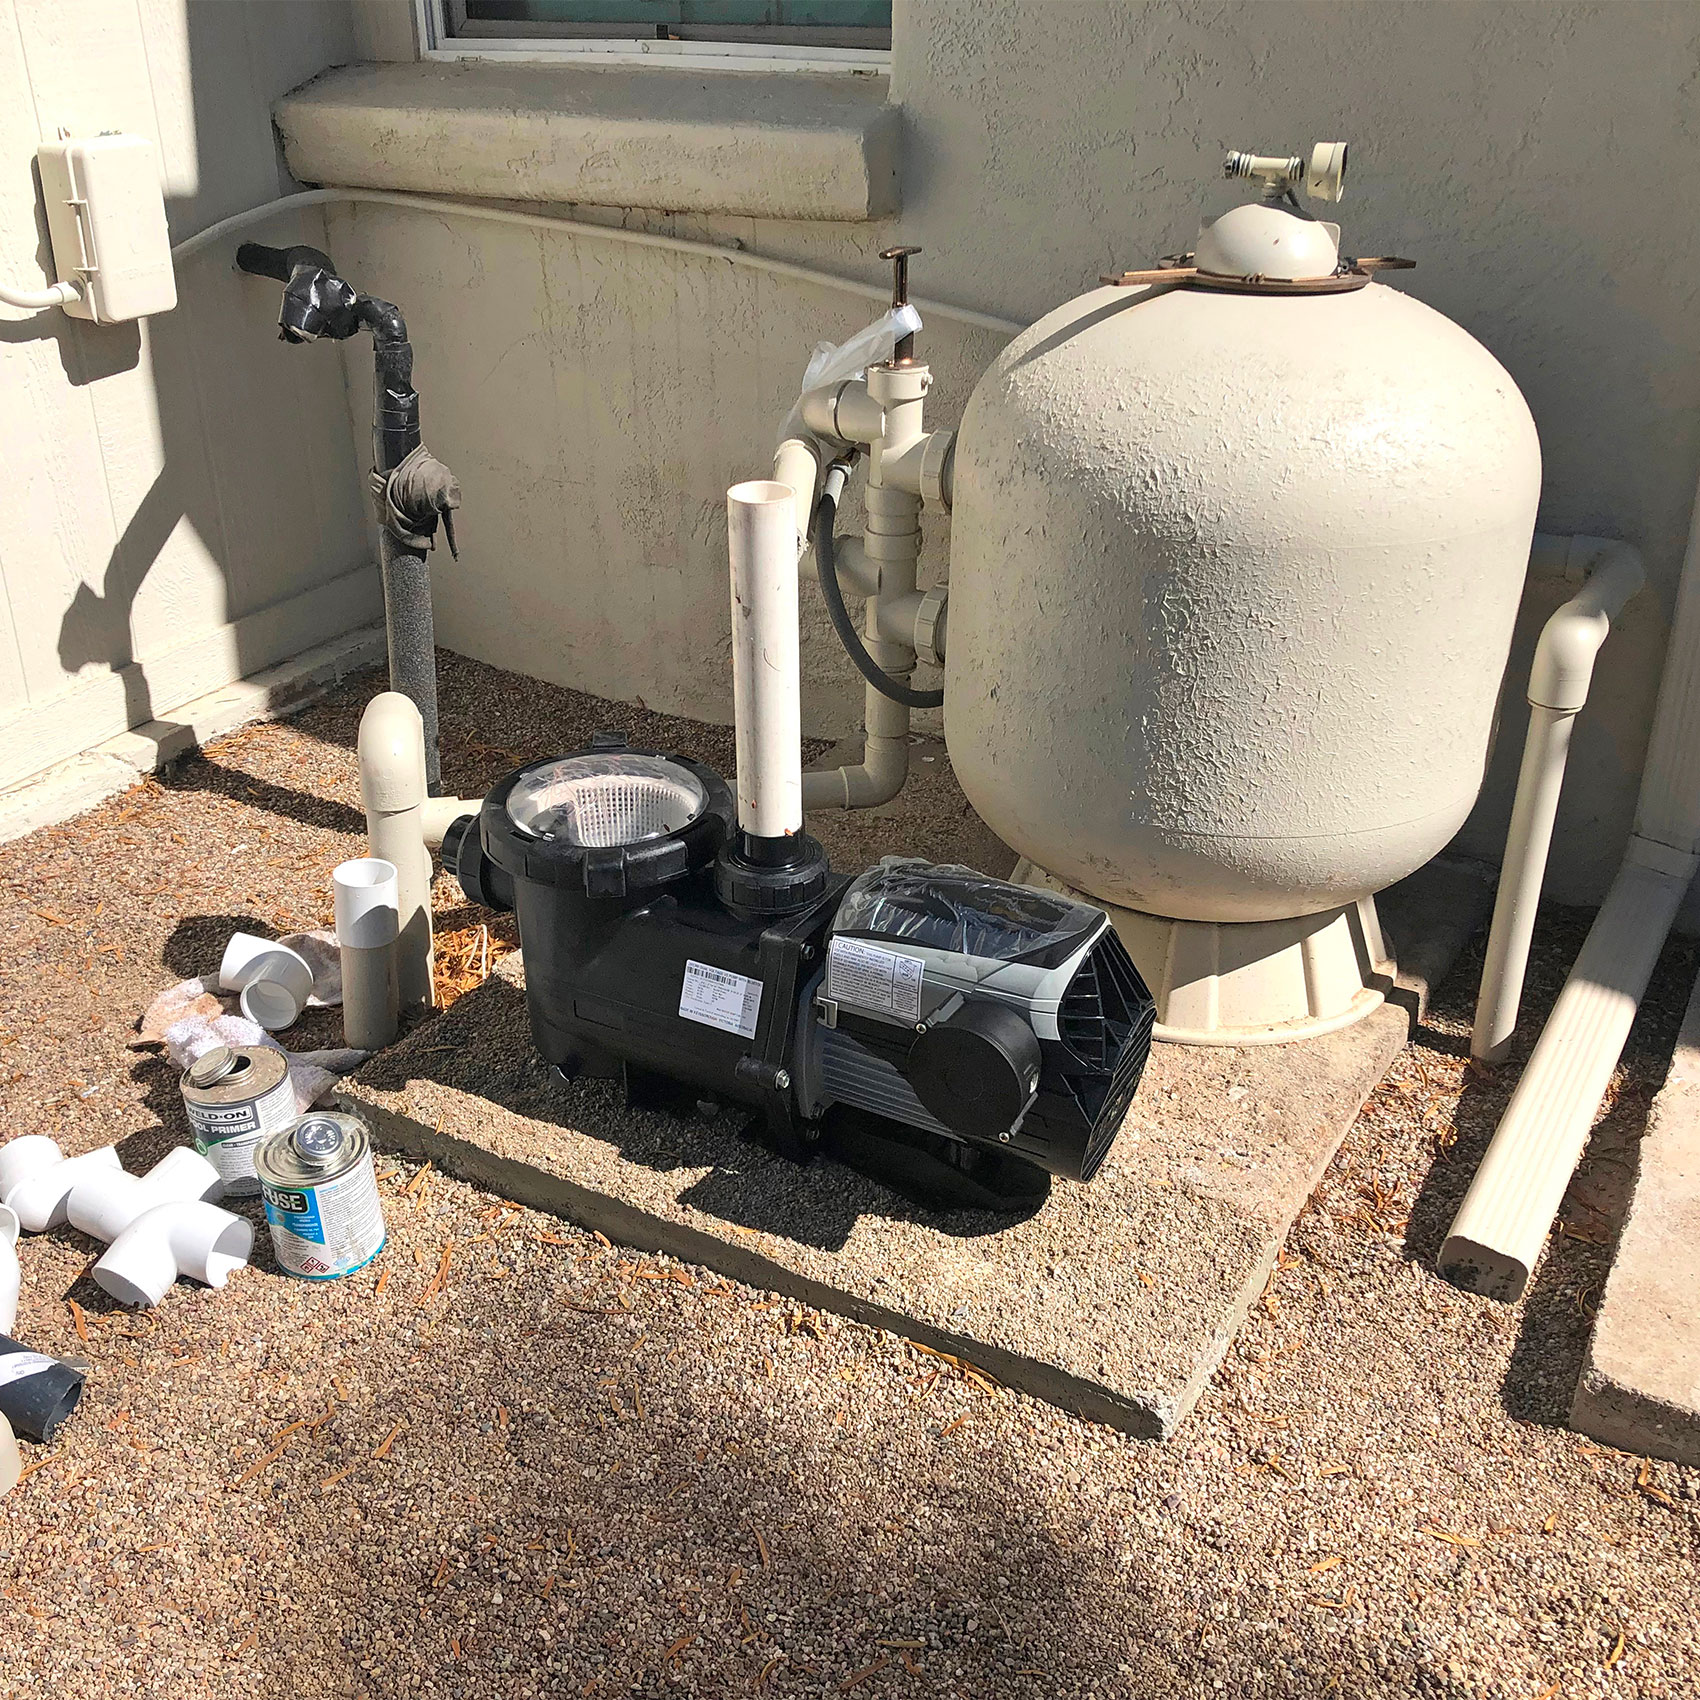 Pompe de piscine et réservoir de filtration installés à l'extérieur près d'un bâtiment.